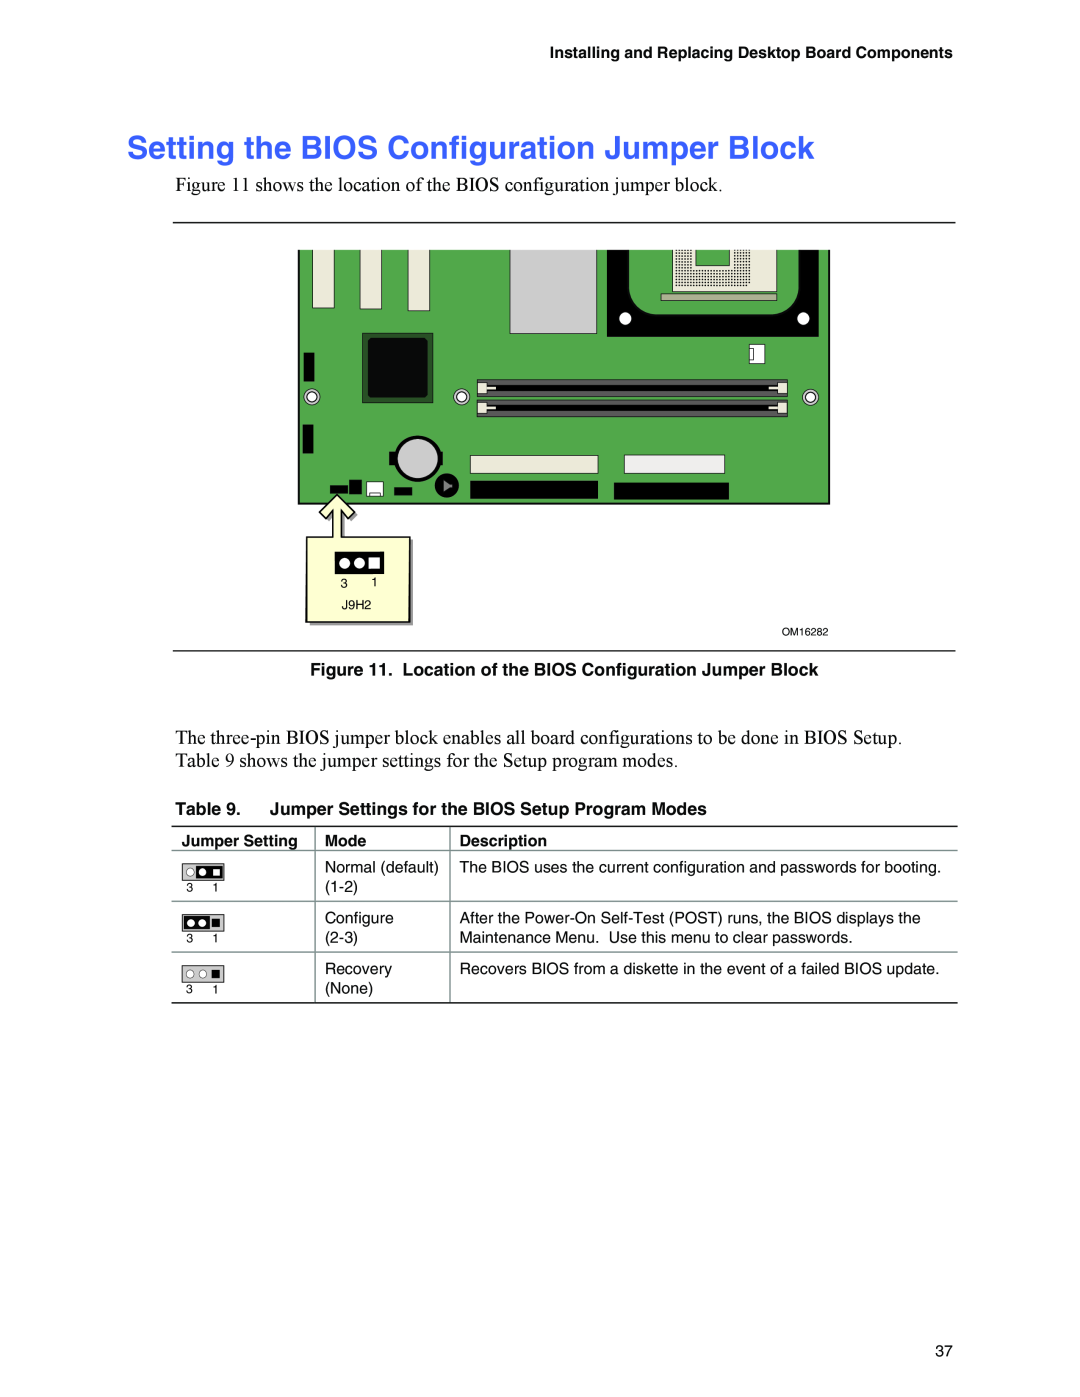 Intel D845GVFN Setting the BIOS Configuration Jumper Block, Installing and Replacing Desktop Board Components, Description 